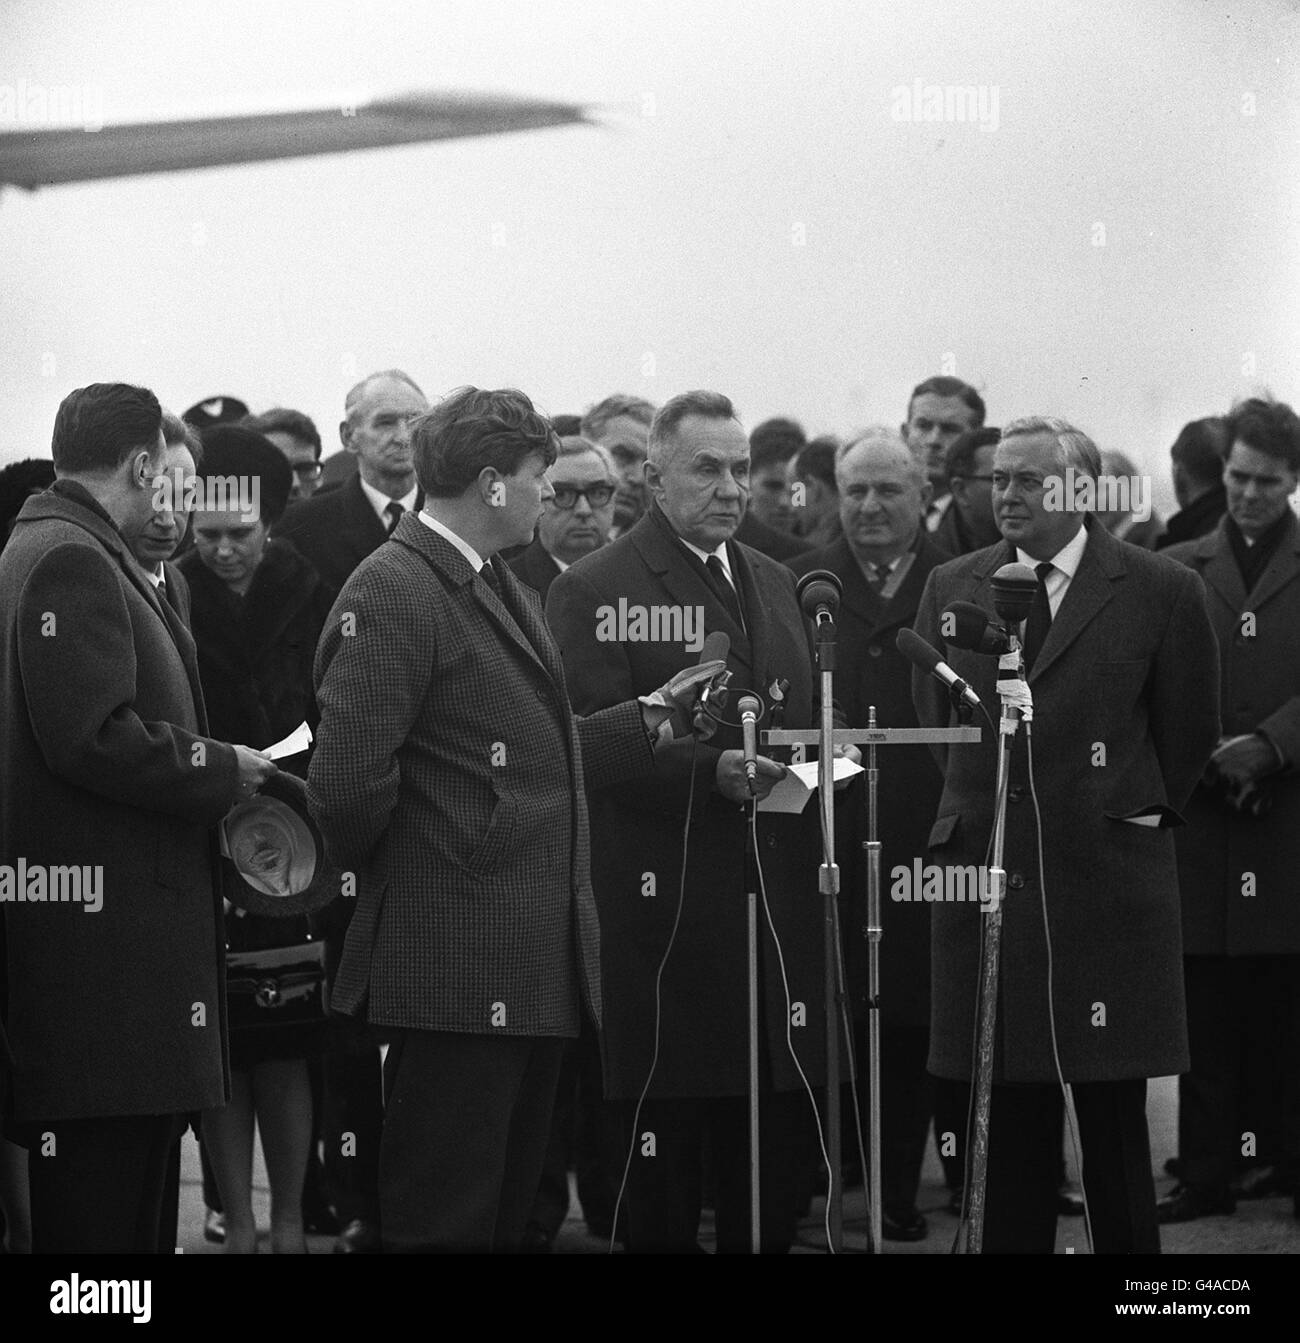 20/02/1980: Morto in questo giorno, l'ex Premier sovietico, Alexi Kosygin HAROLD WILSON (A DESTRA) SALUTA ALEXEI KOSYGIN IL PRIMO MINISTRO SOVIETICO ALL'AEROPORTO DI HEATHROW, A LONDRA, IN UNA VISITA UFFICIALE IN GRAN BRETAGNA. (CENTRO) SEGRETARIO AGLI ESTERI SIG. GEORGE BROWN Foto Stock